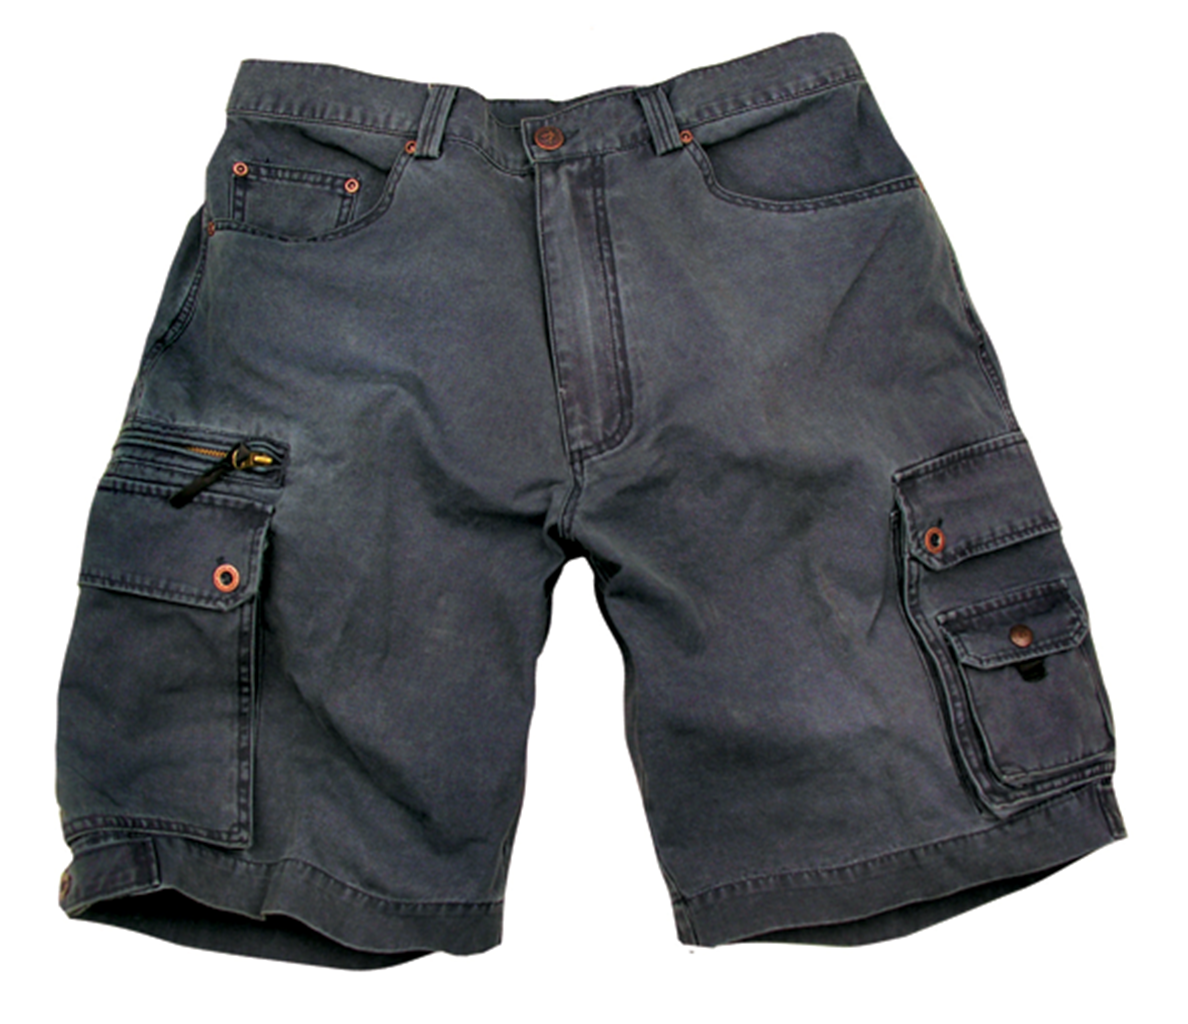 Herren Outdoor-Shorts mit Reißverschluss und Druckknopf Taschen, weit geschnitten